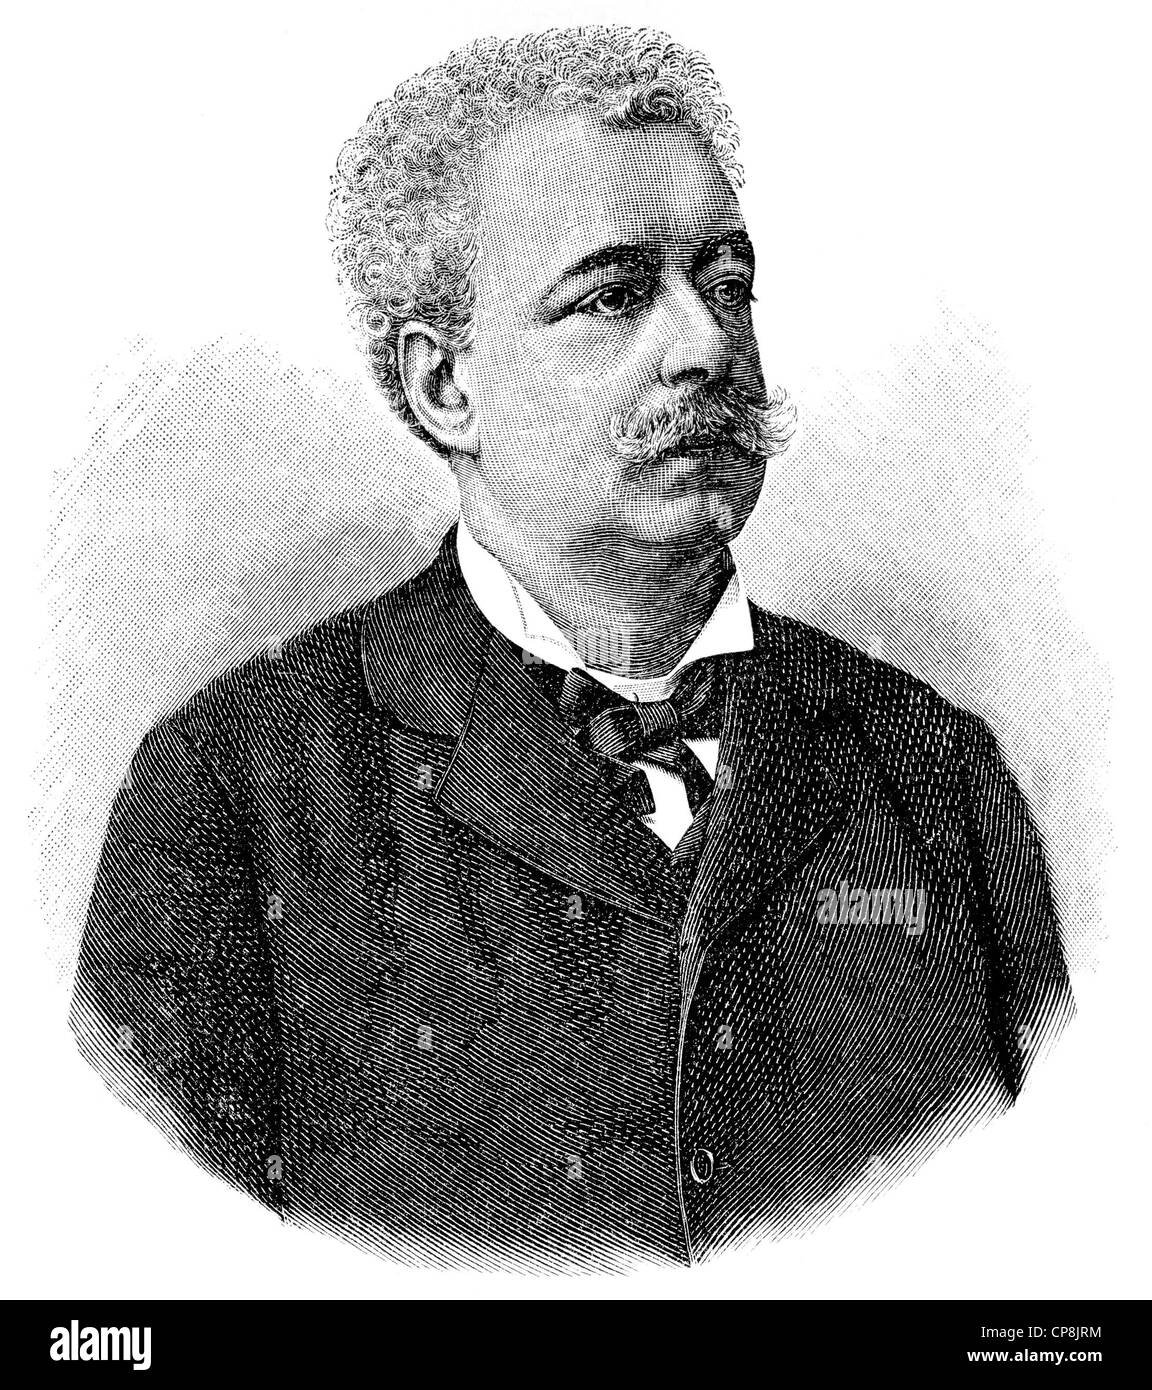 Edmondo De Amicis, 1846 - 1908, an Italian writer, Historische Zeichnung aus dem 19. Jahrhundert, Portait von Edmondo De Amicis, Stock Photo